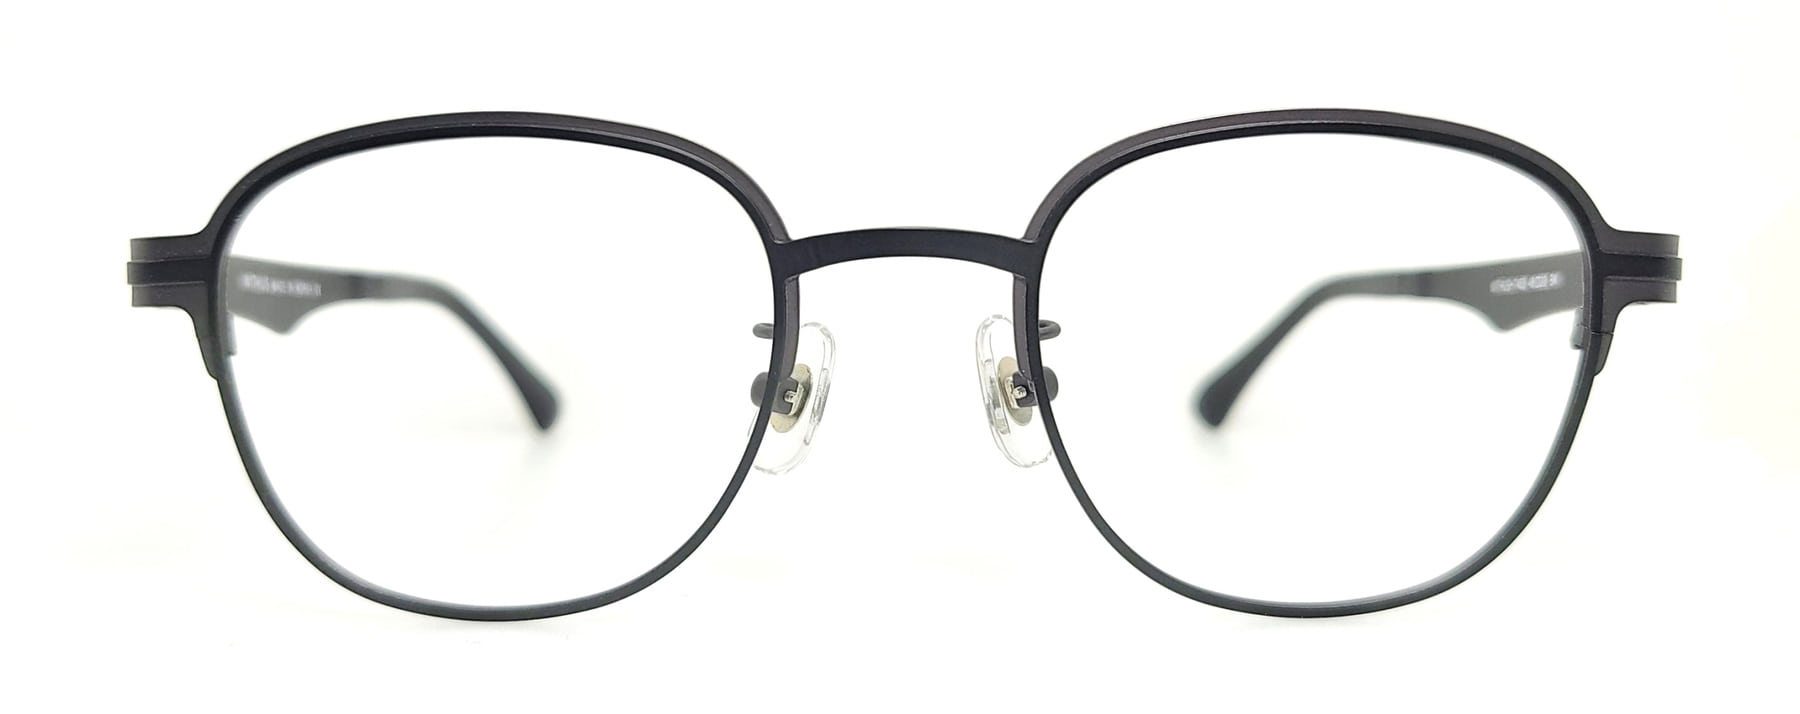 WITHUS-7403, Korean glasses, sunglasses, eyeglasses, glasses